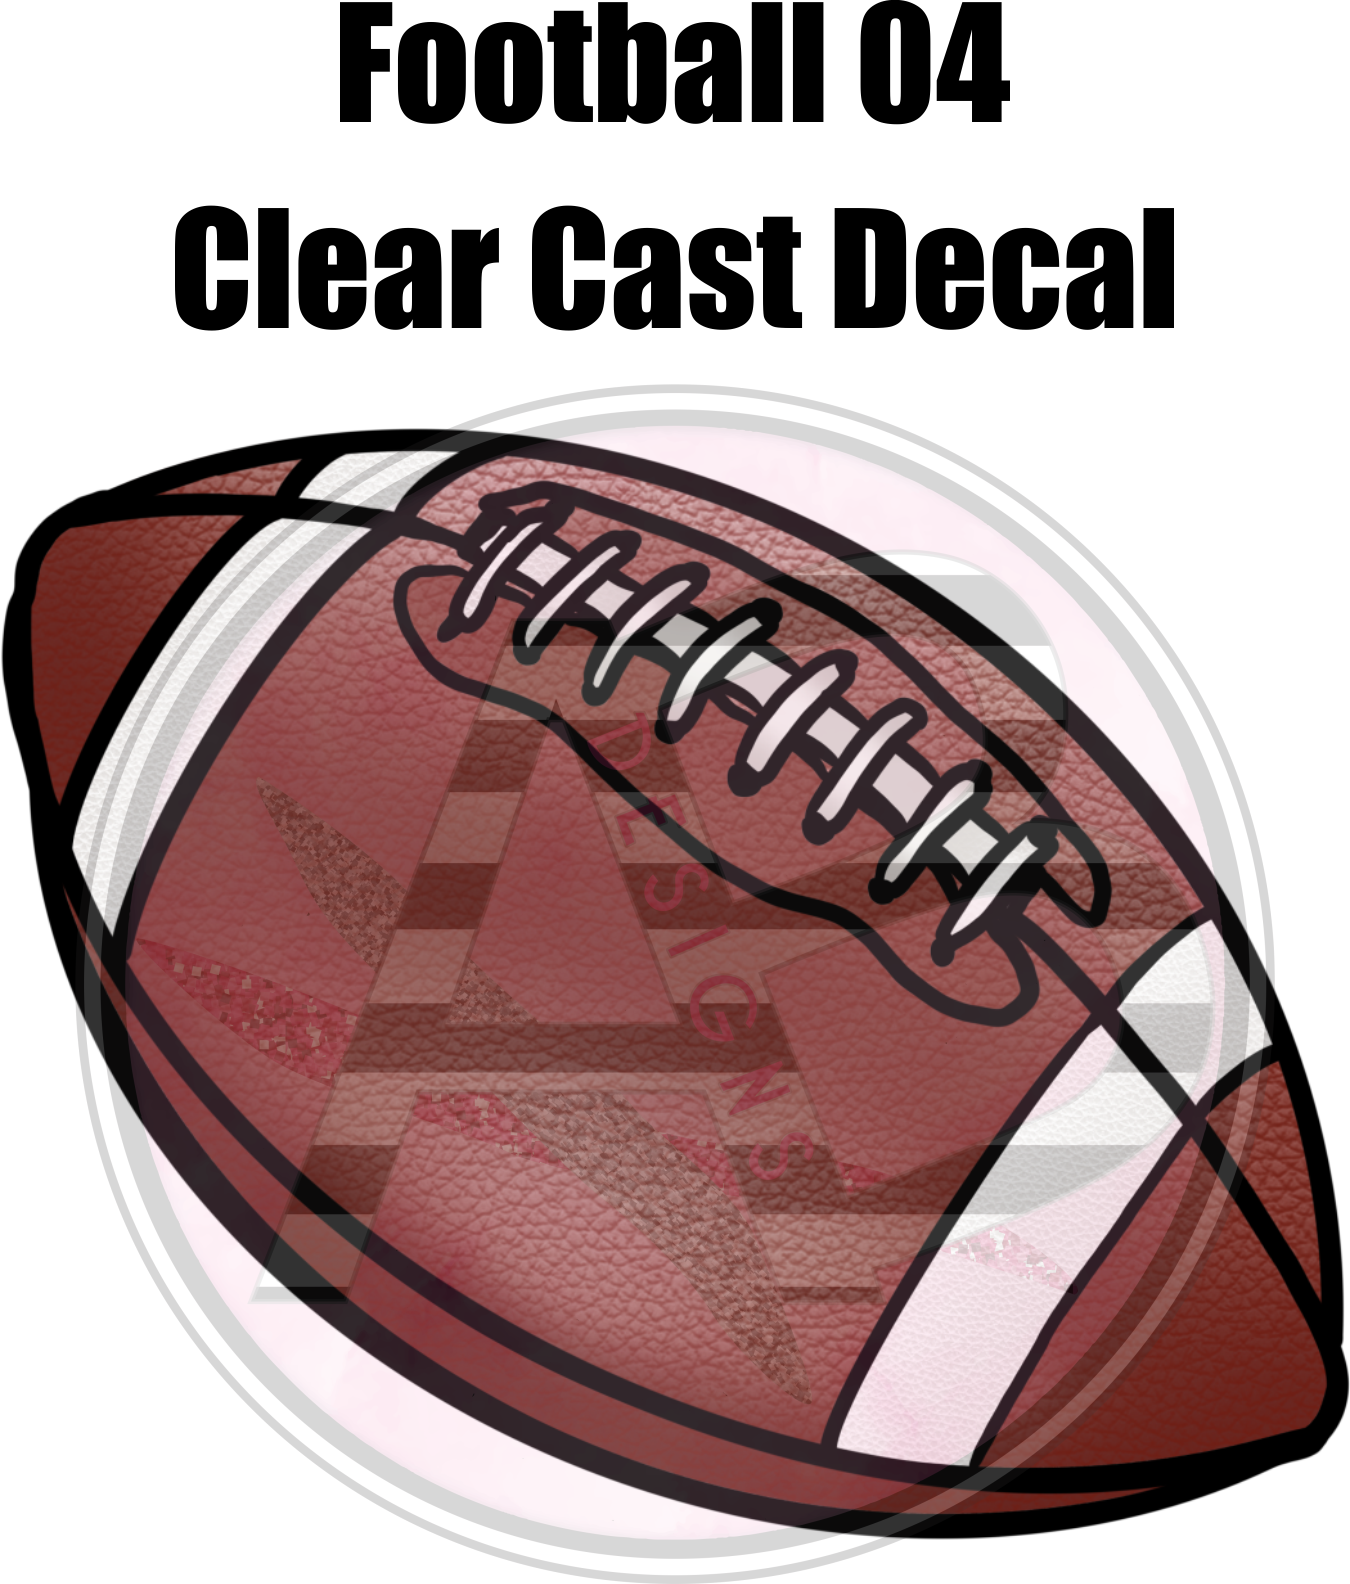 Football 04 - Clear Cast Decal